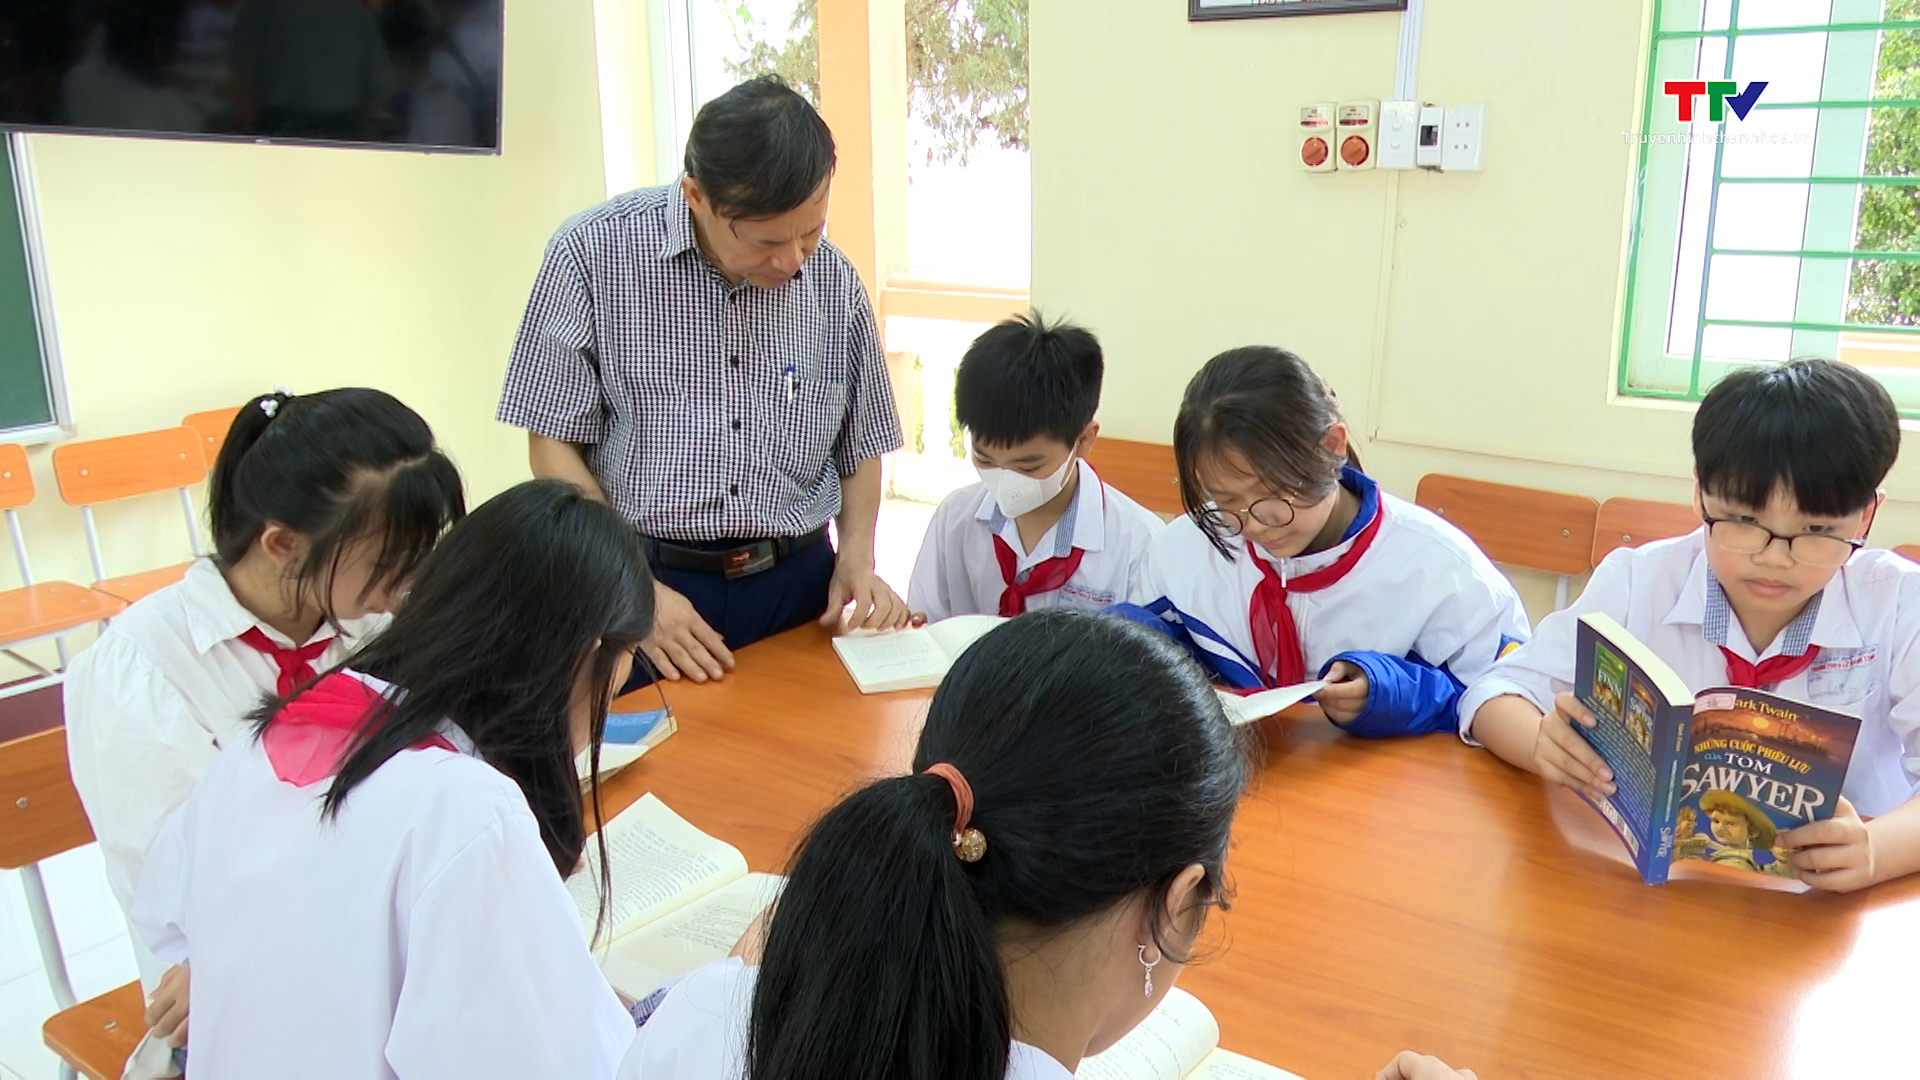 Huyện Thọ Xuân: Xây dựng thư viện thân thiện trong trường học - Ảnh 3.